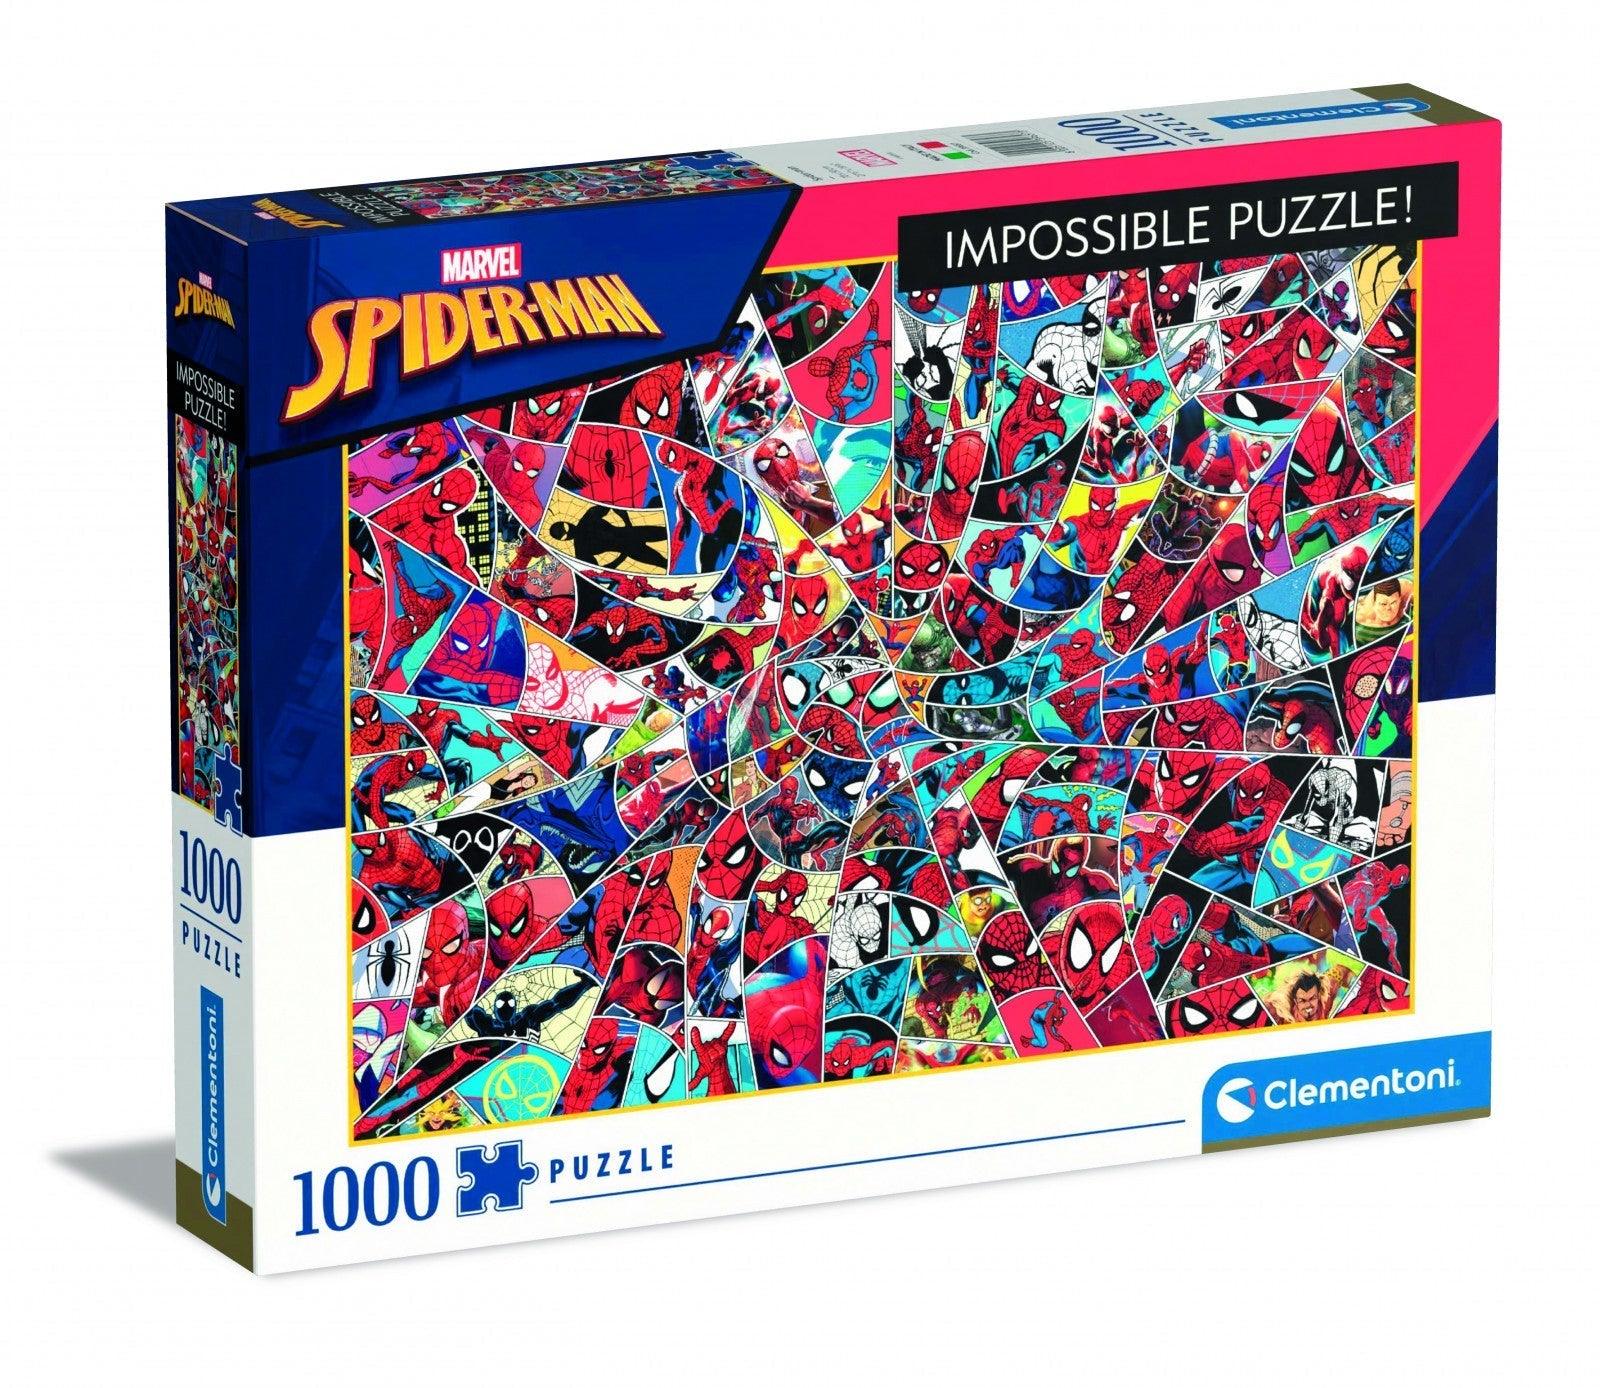 VR-97666 Clementoni Puzzle Spiderman Impossible Puzzle 1000 pieces - Clementoni - Titan Pop Culture